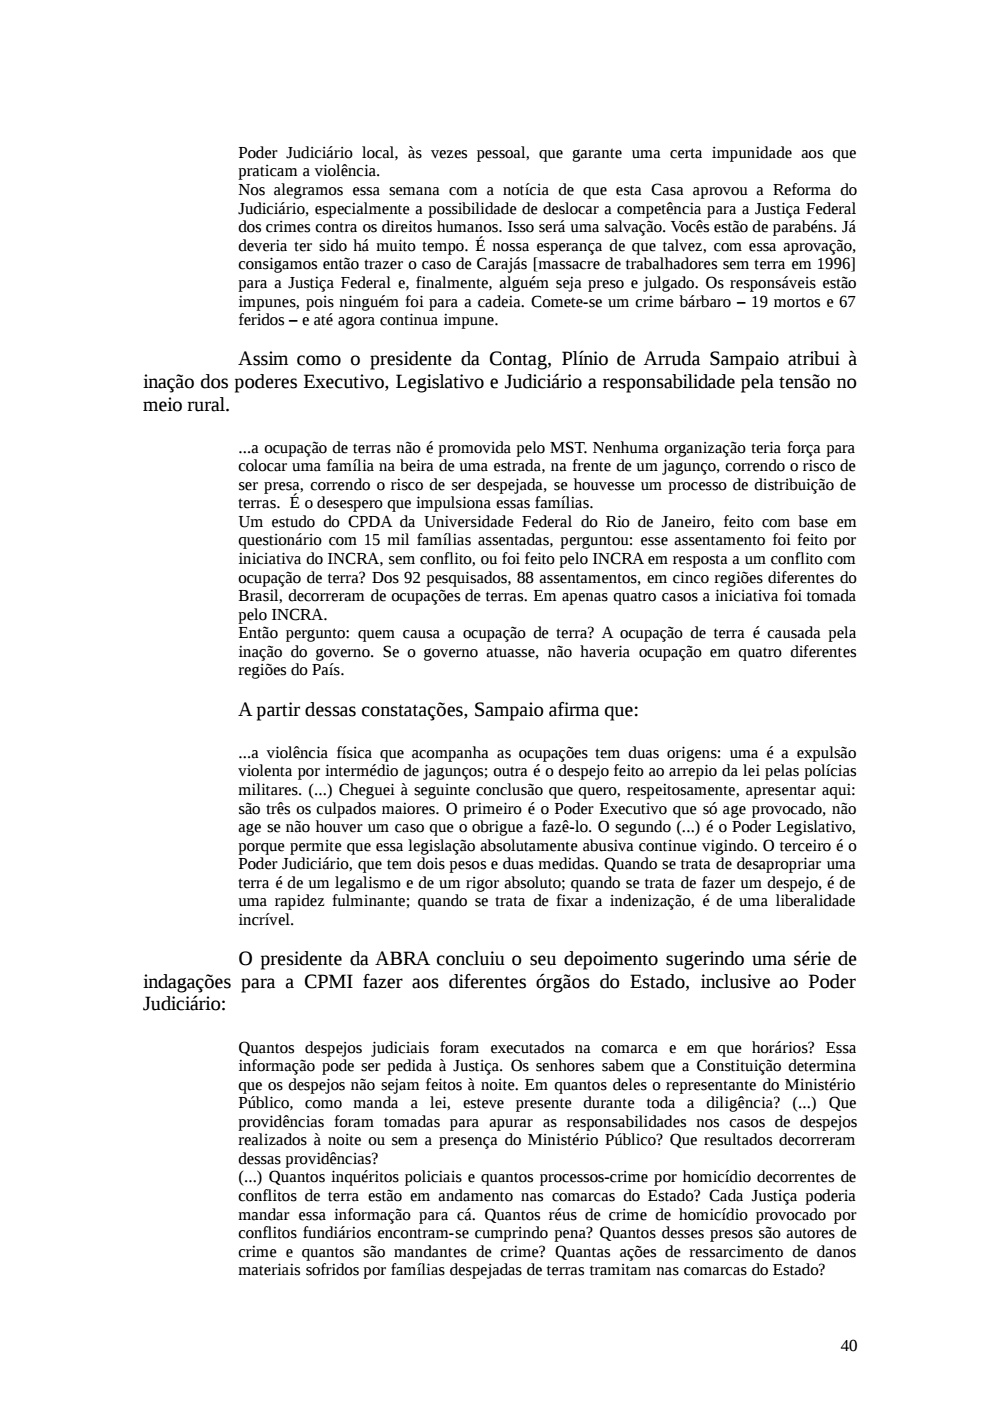 Page 40 from Relatório final da comissão